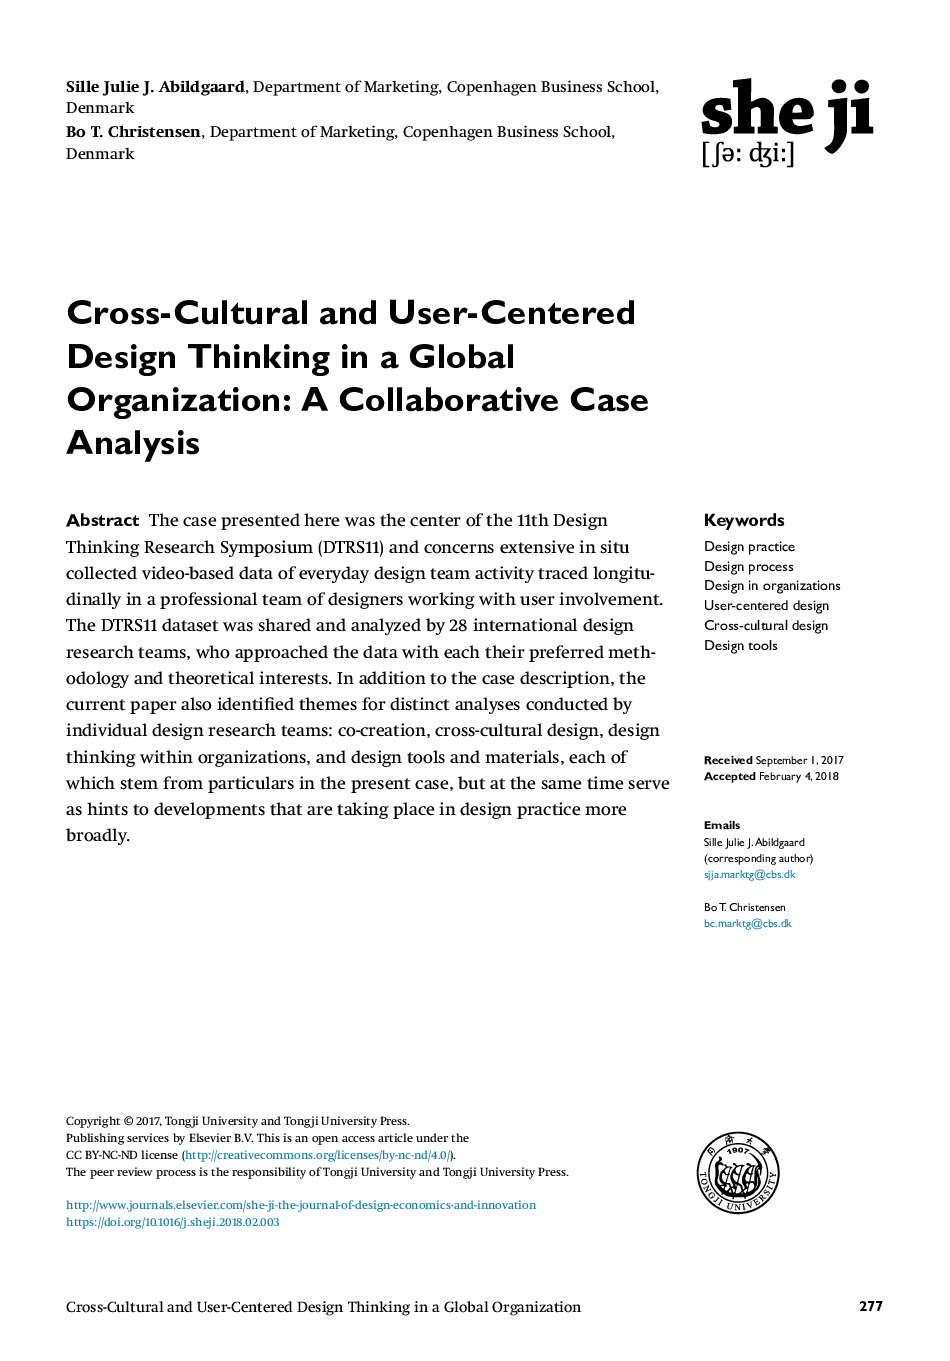 تفکر طراحی متقابل فرهنگی و کاربری در سازمان جهانی: تجزیه و تحلیل مورد همکاری 